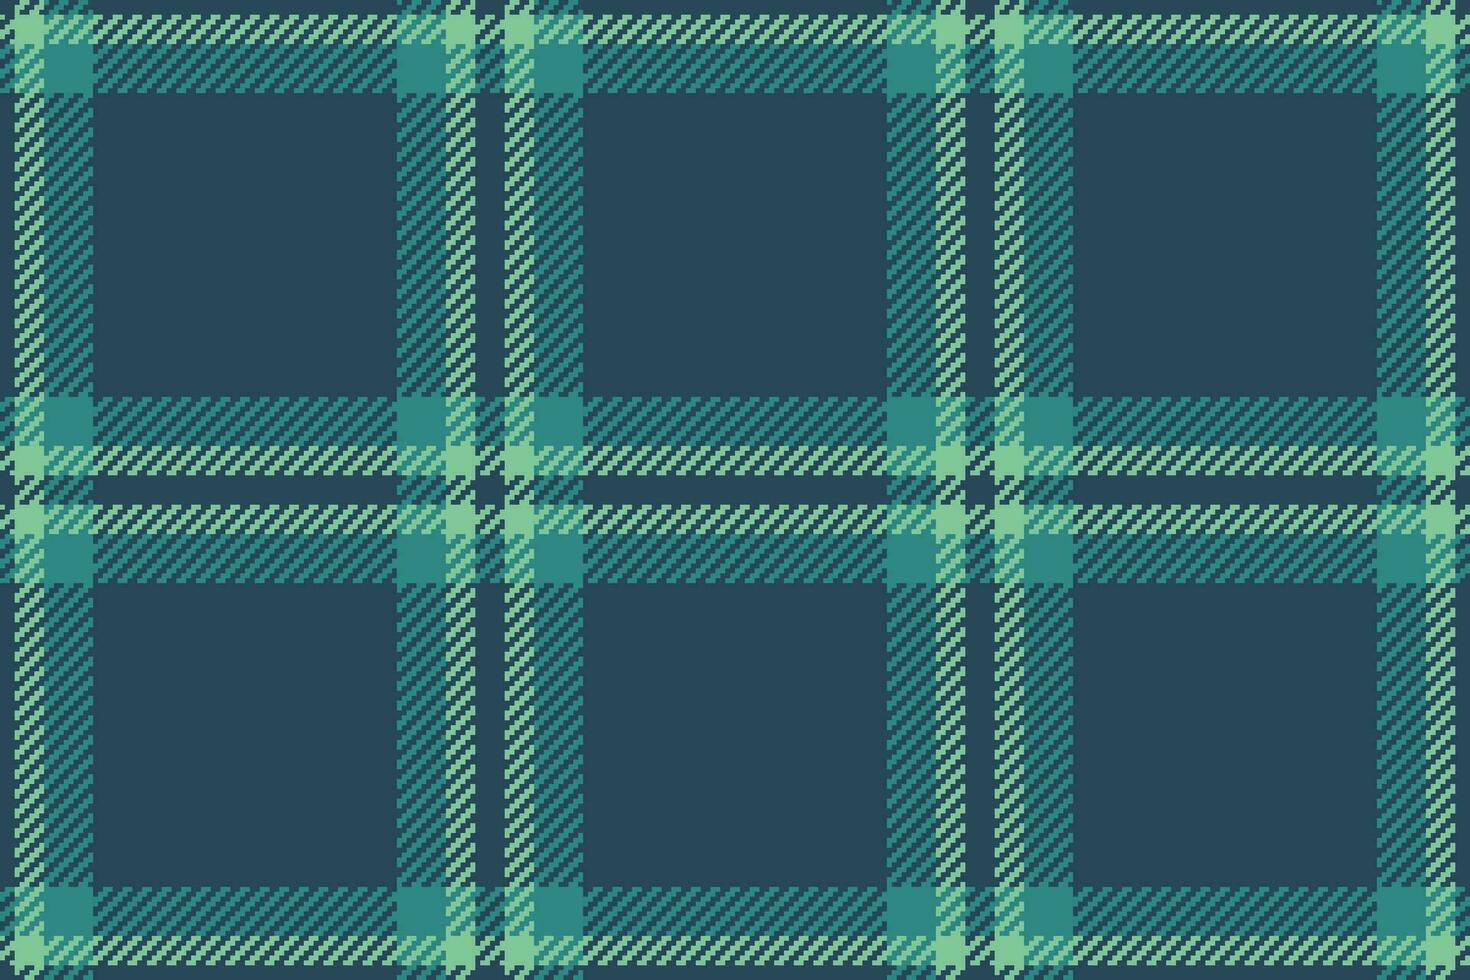 achtergrond structuur vector van plaid naadloos Schotse ruit met een controleren kleding stof textiel patroon.